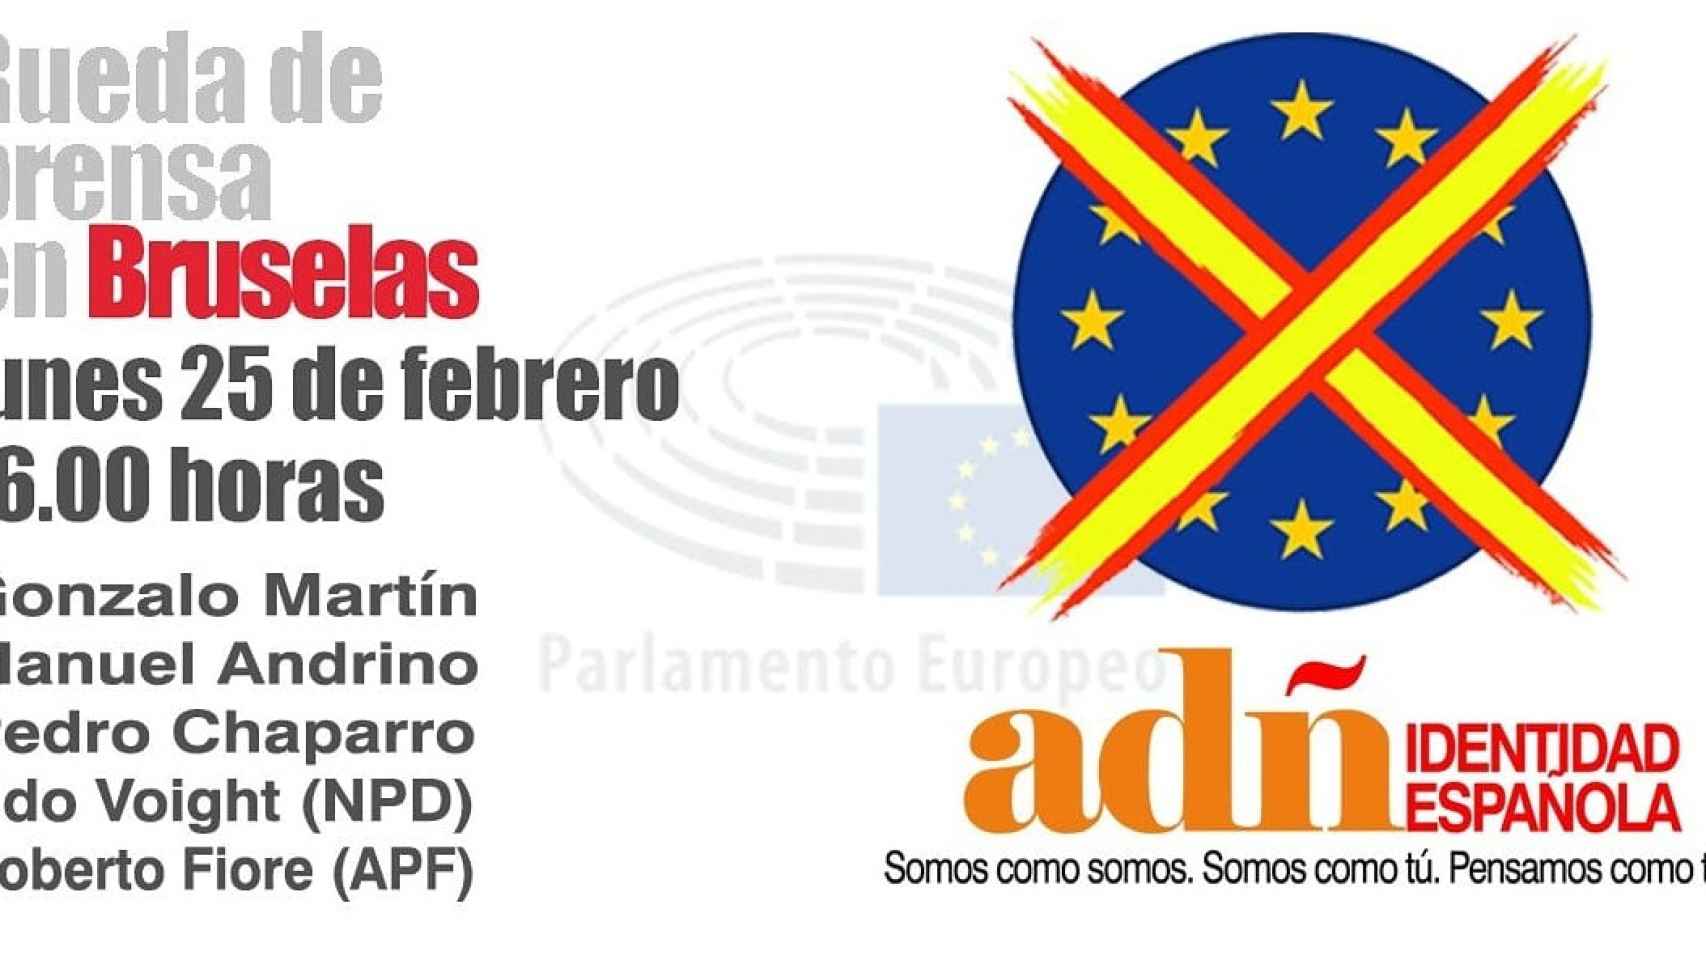 Acto de Falange y Democracia Nacional en el Parlamento Europeo.